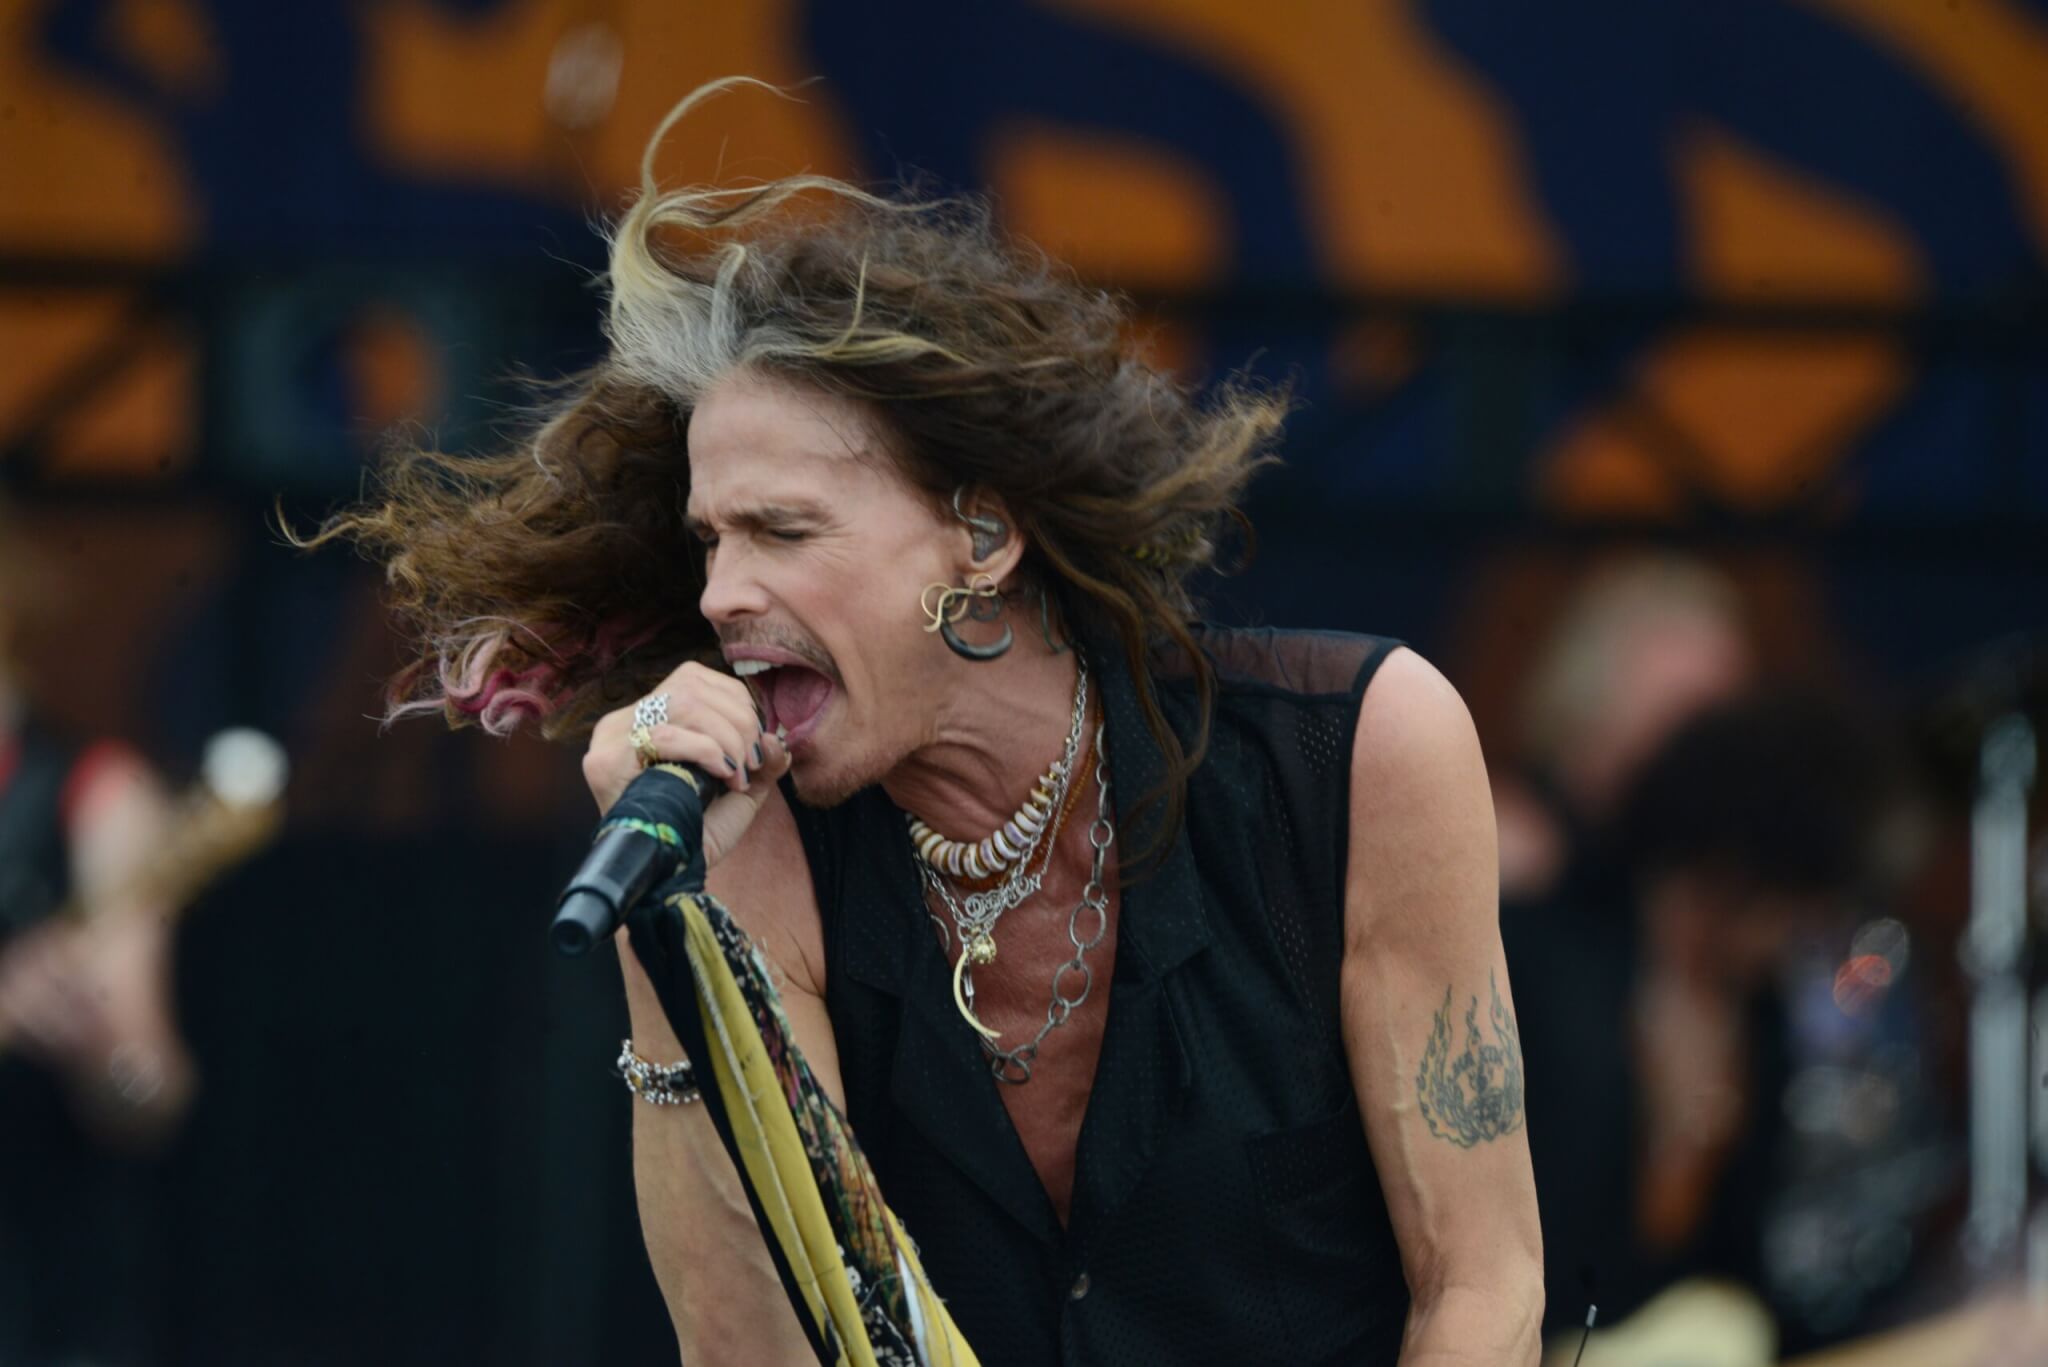 Lead singer of Aerosmith, Steven Tyler, performing in 2018 